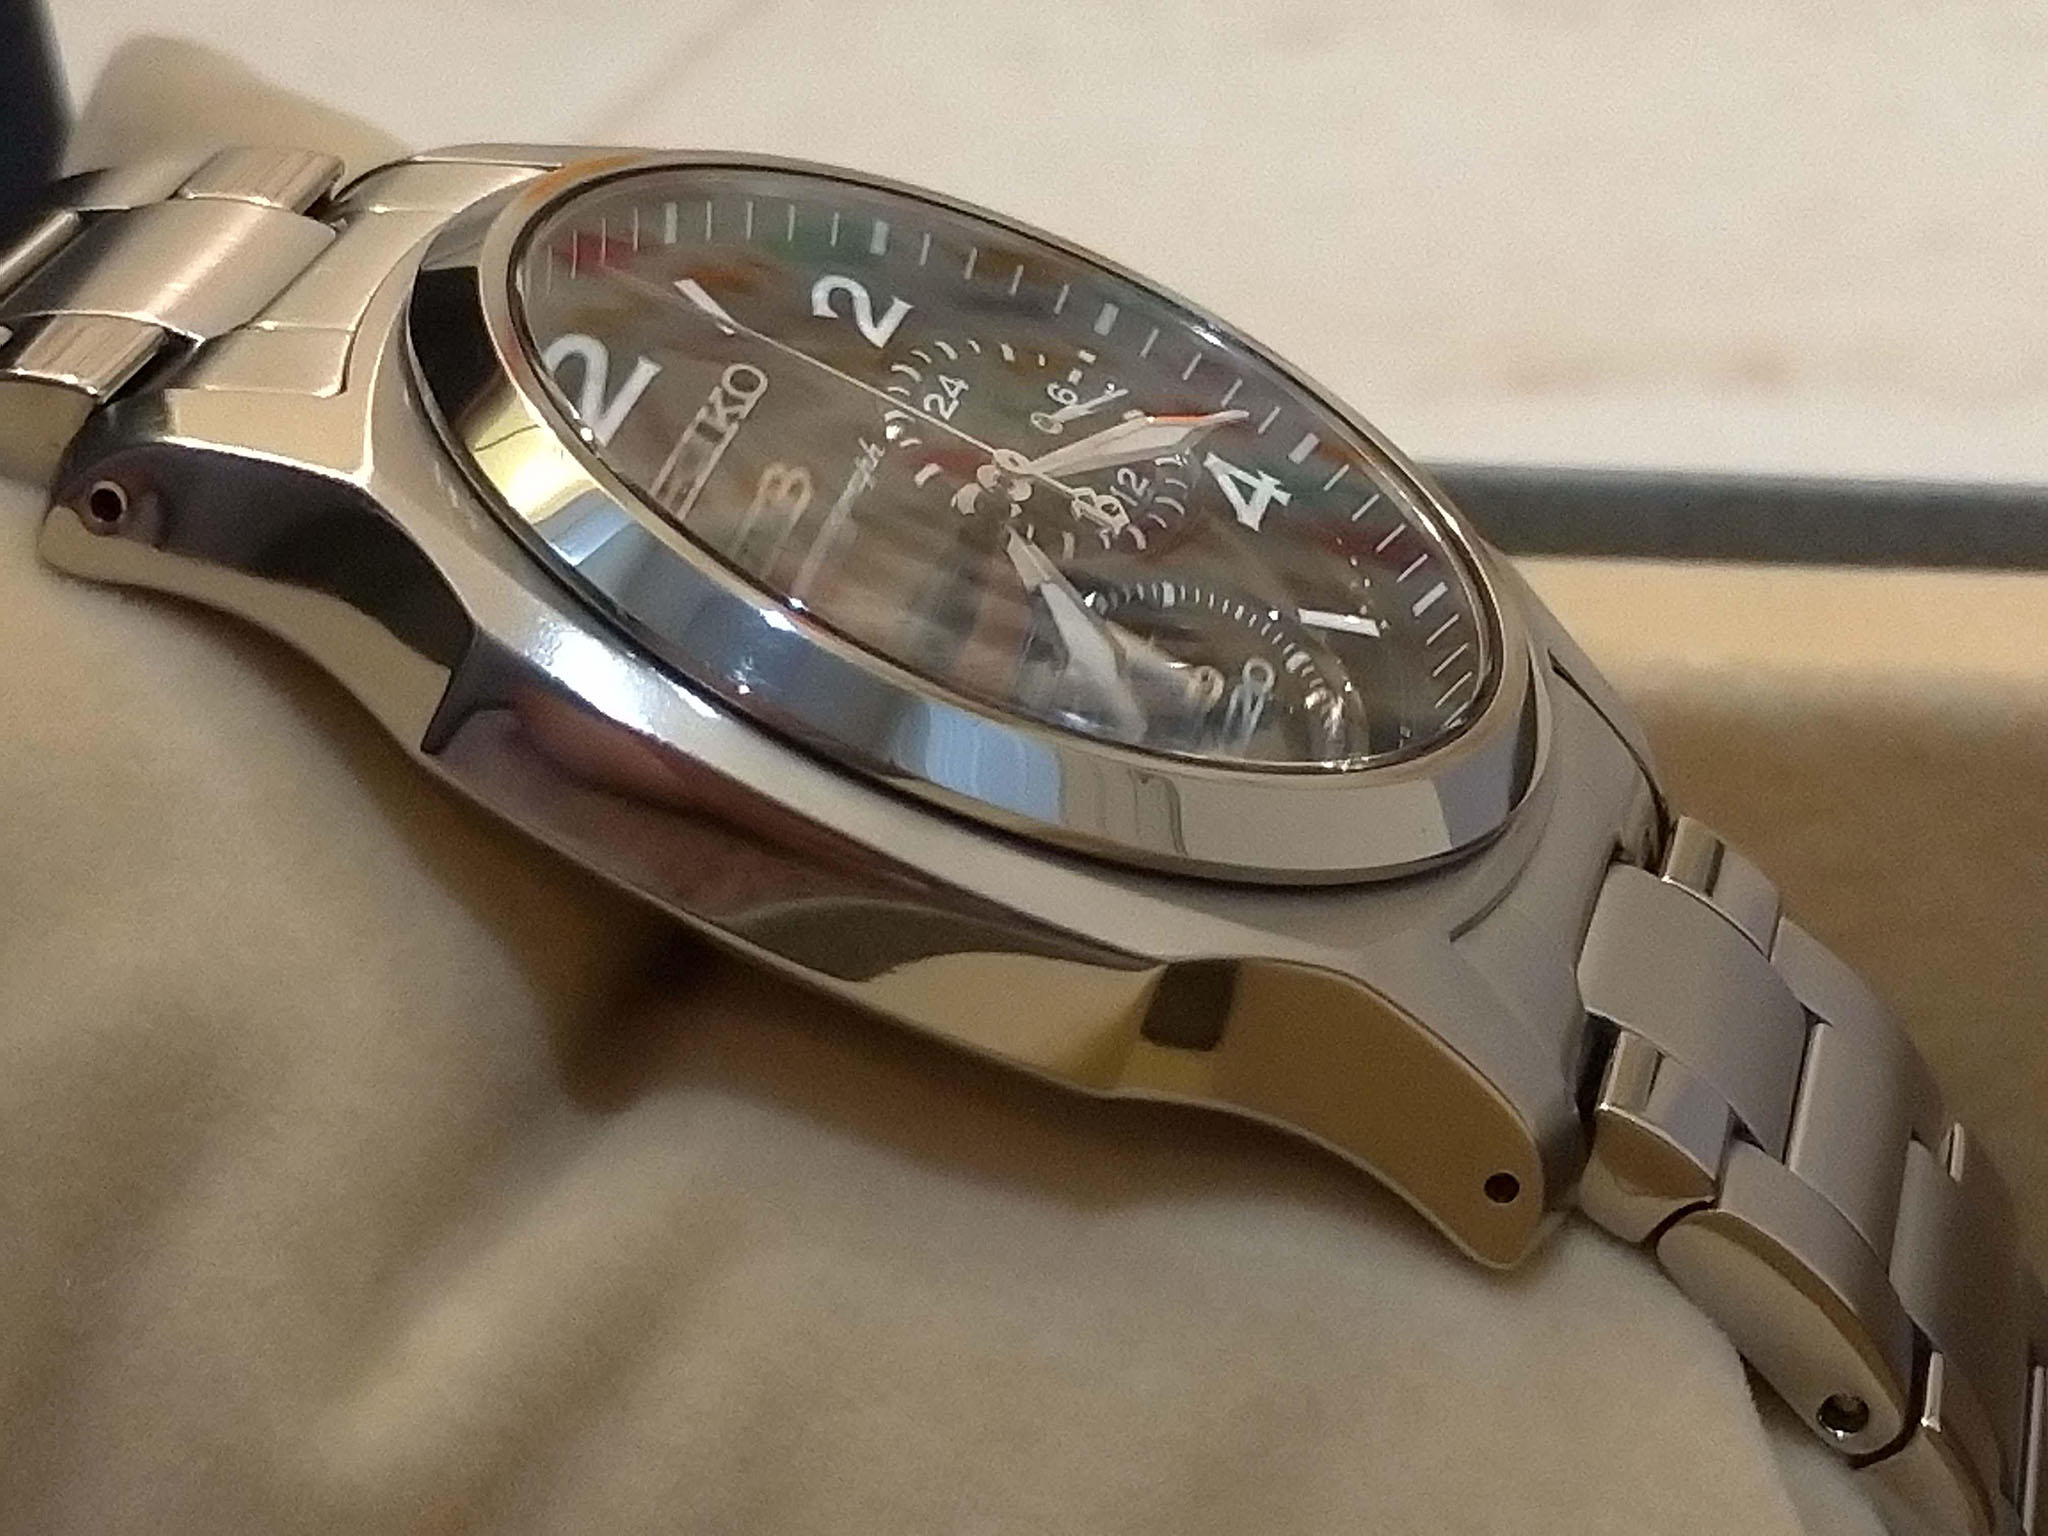 Làm đồng hồ từ titanium và sứ ngon hơn ở điểm nào? Vì sao chúng không nhiều  như thép?